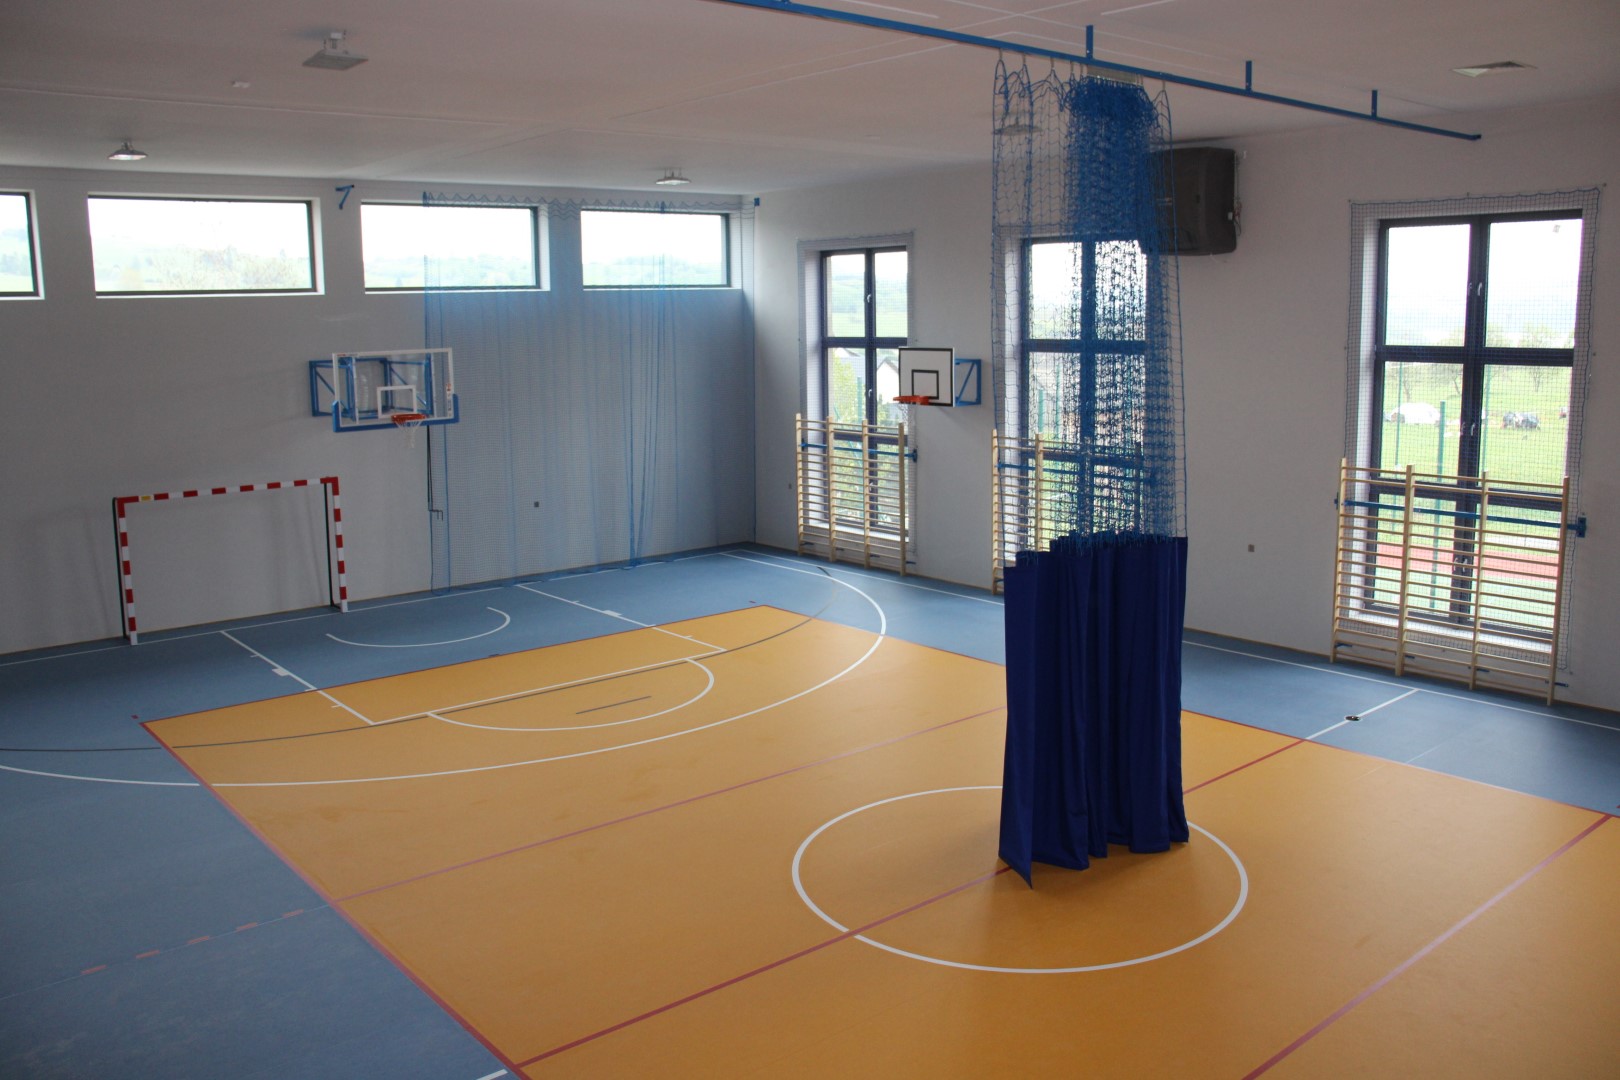 Sala gimnastyczna w Kluszkowcach coraz bliżej oddania do użytku